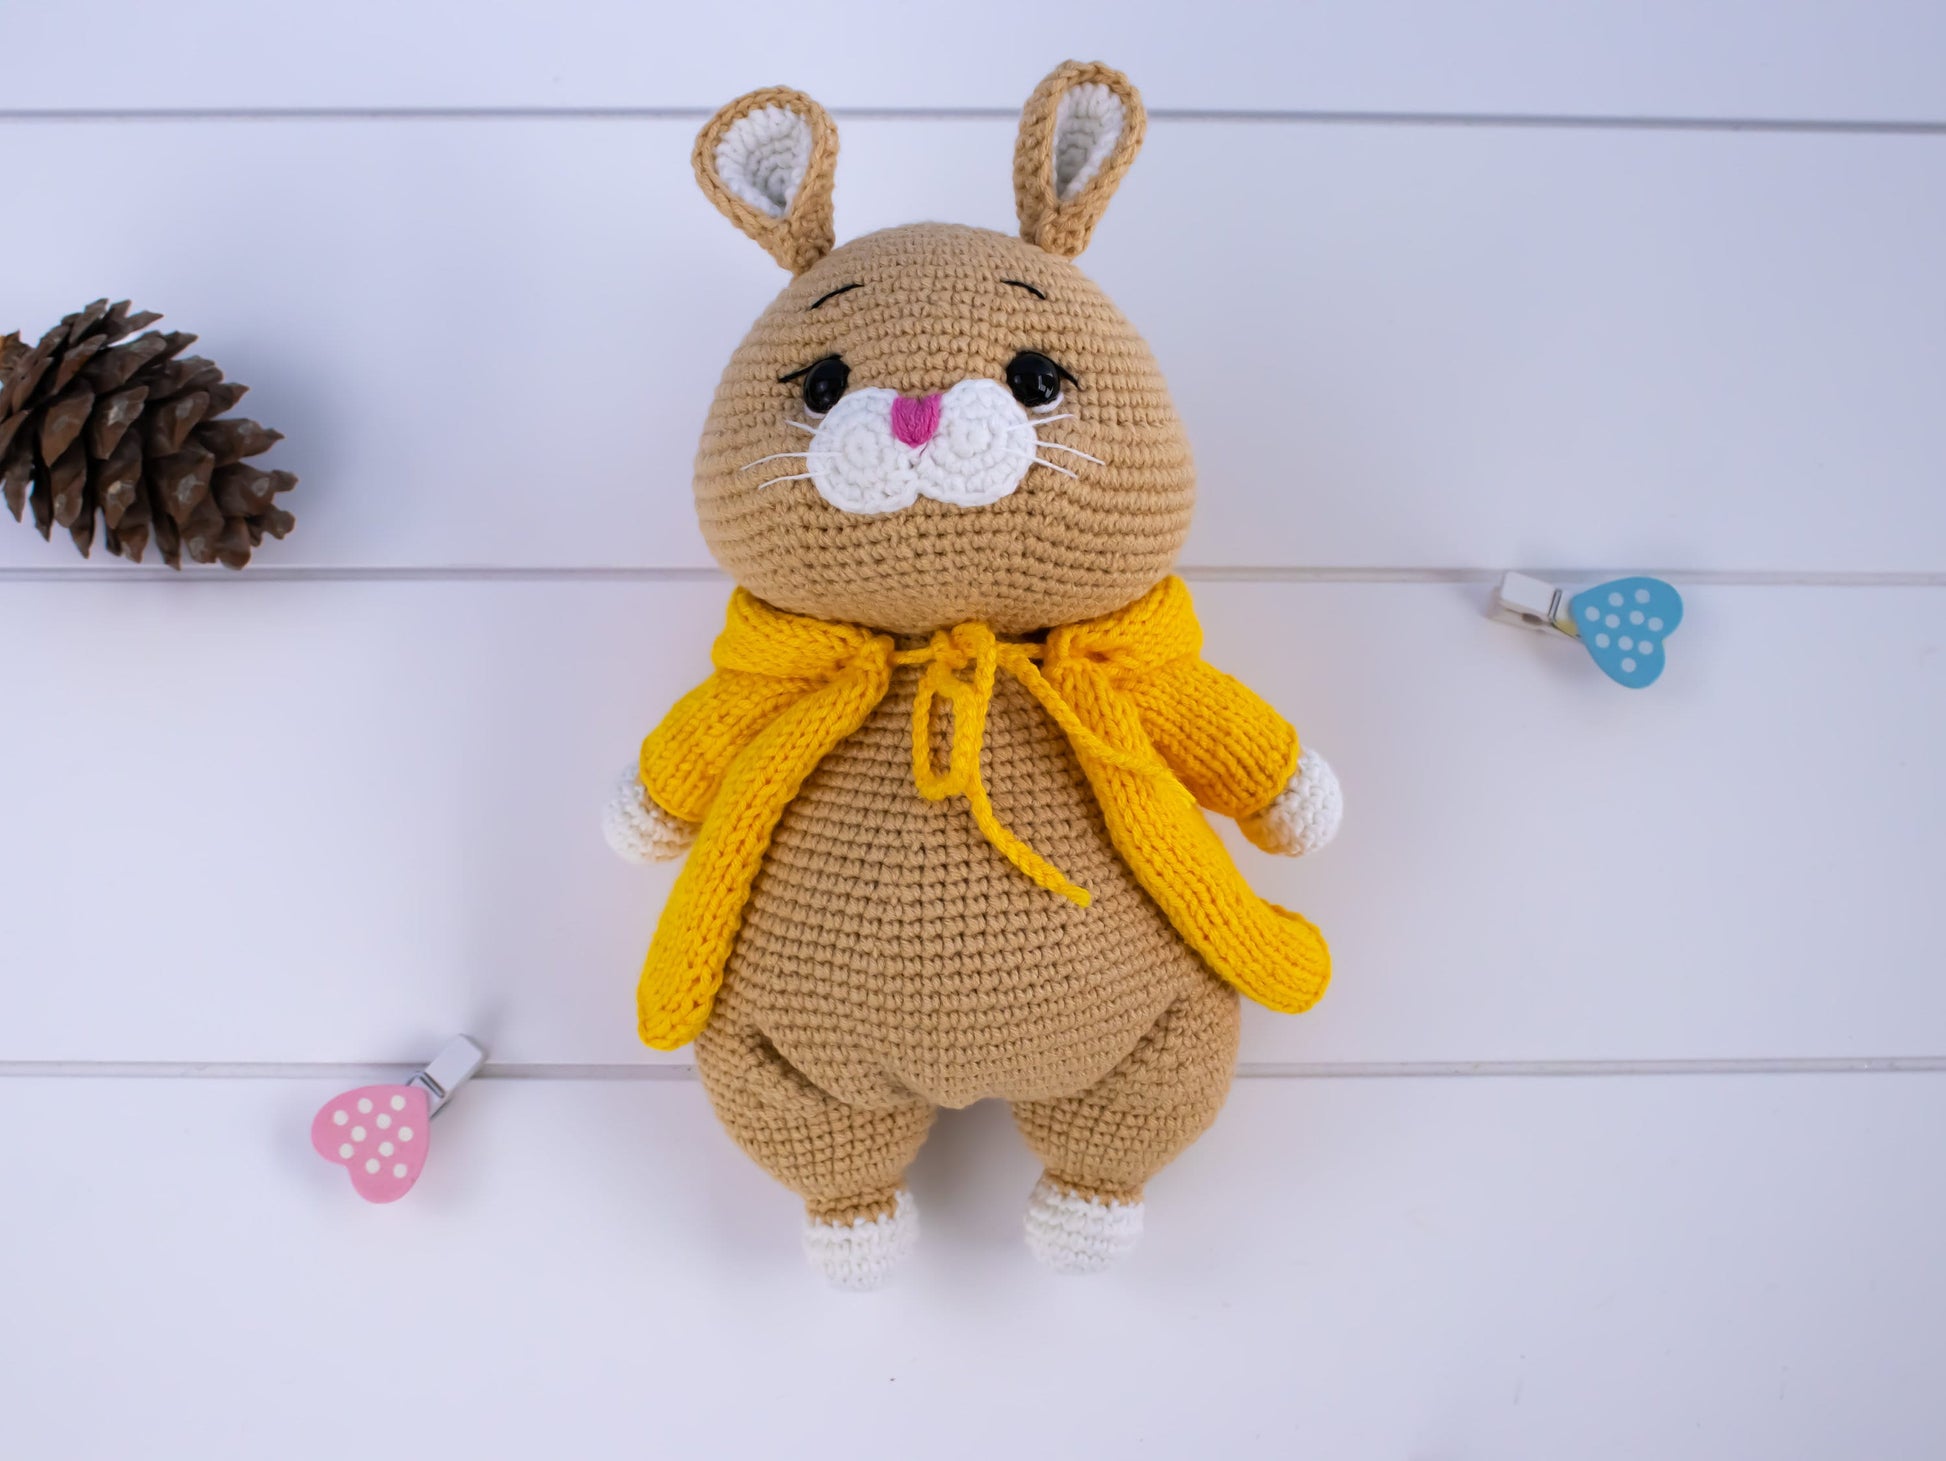 Crochet Mole, Crochet Animal, Crochet Plush, Crochet Plushie, Toddler Gift, Crochet toys, Baby Shower Gift, Crocheted Animals, Stuffed Toy